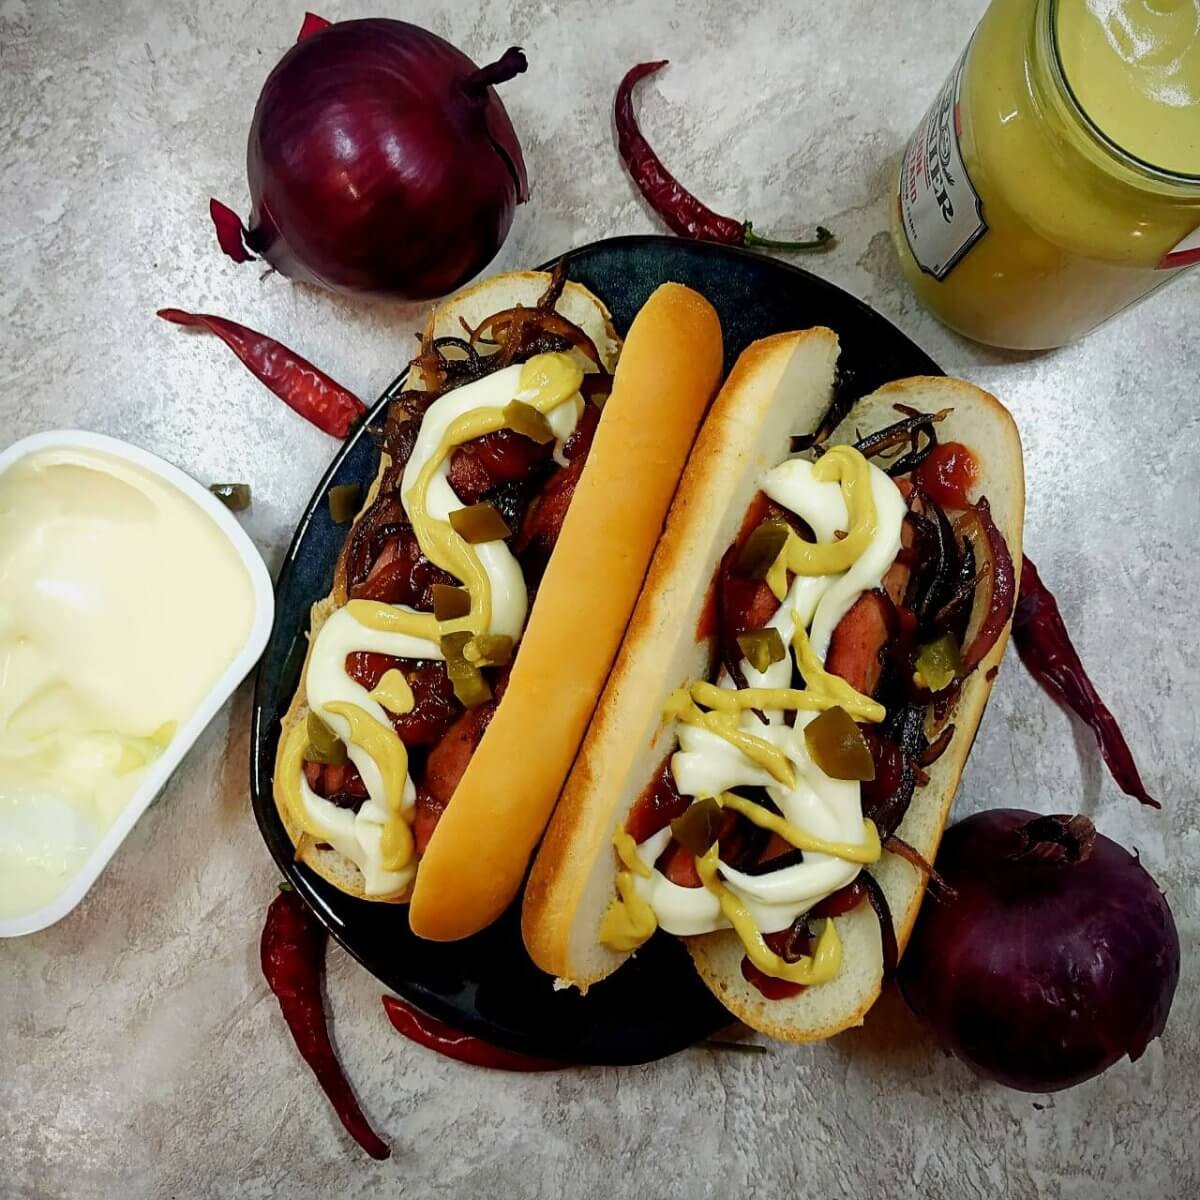 Seattle-Style Hot Dog